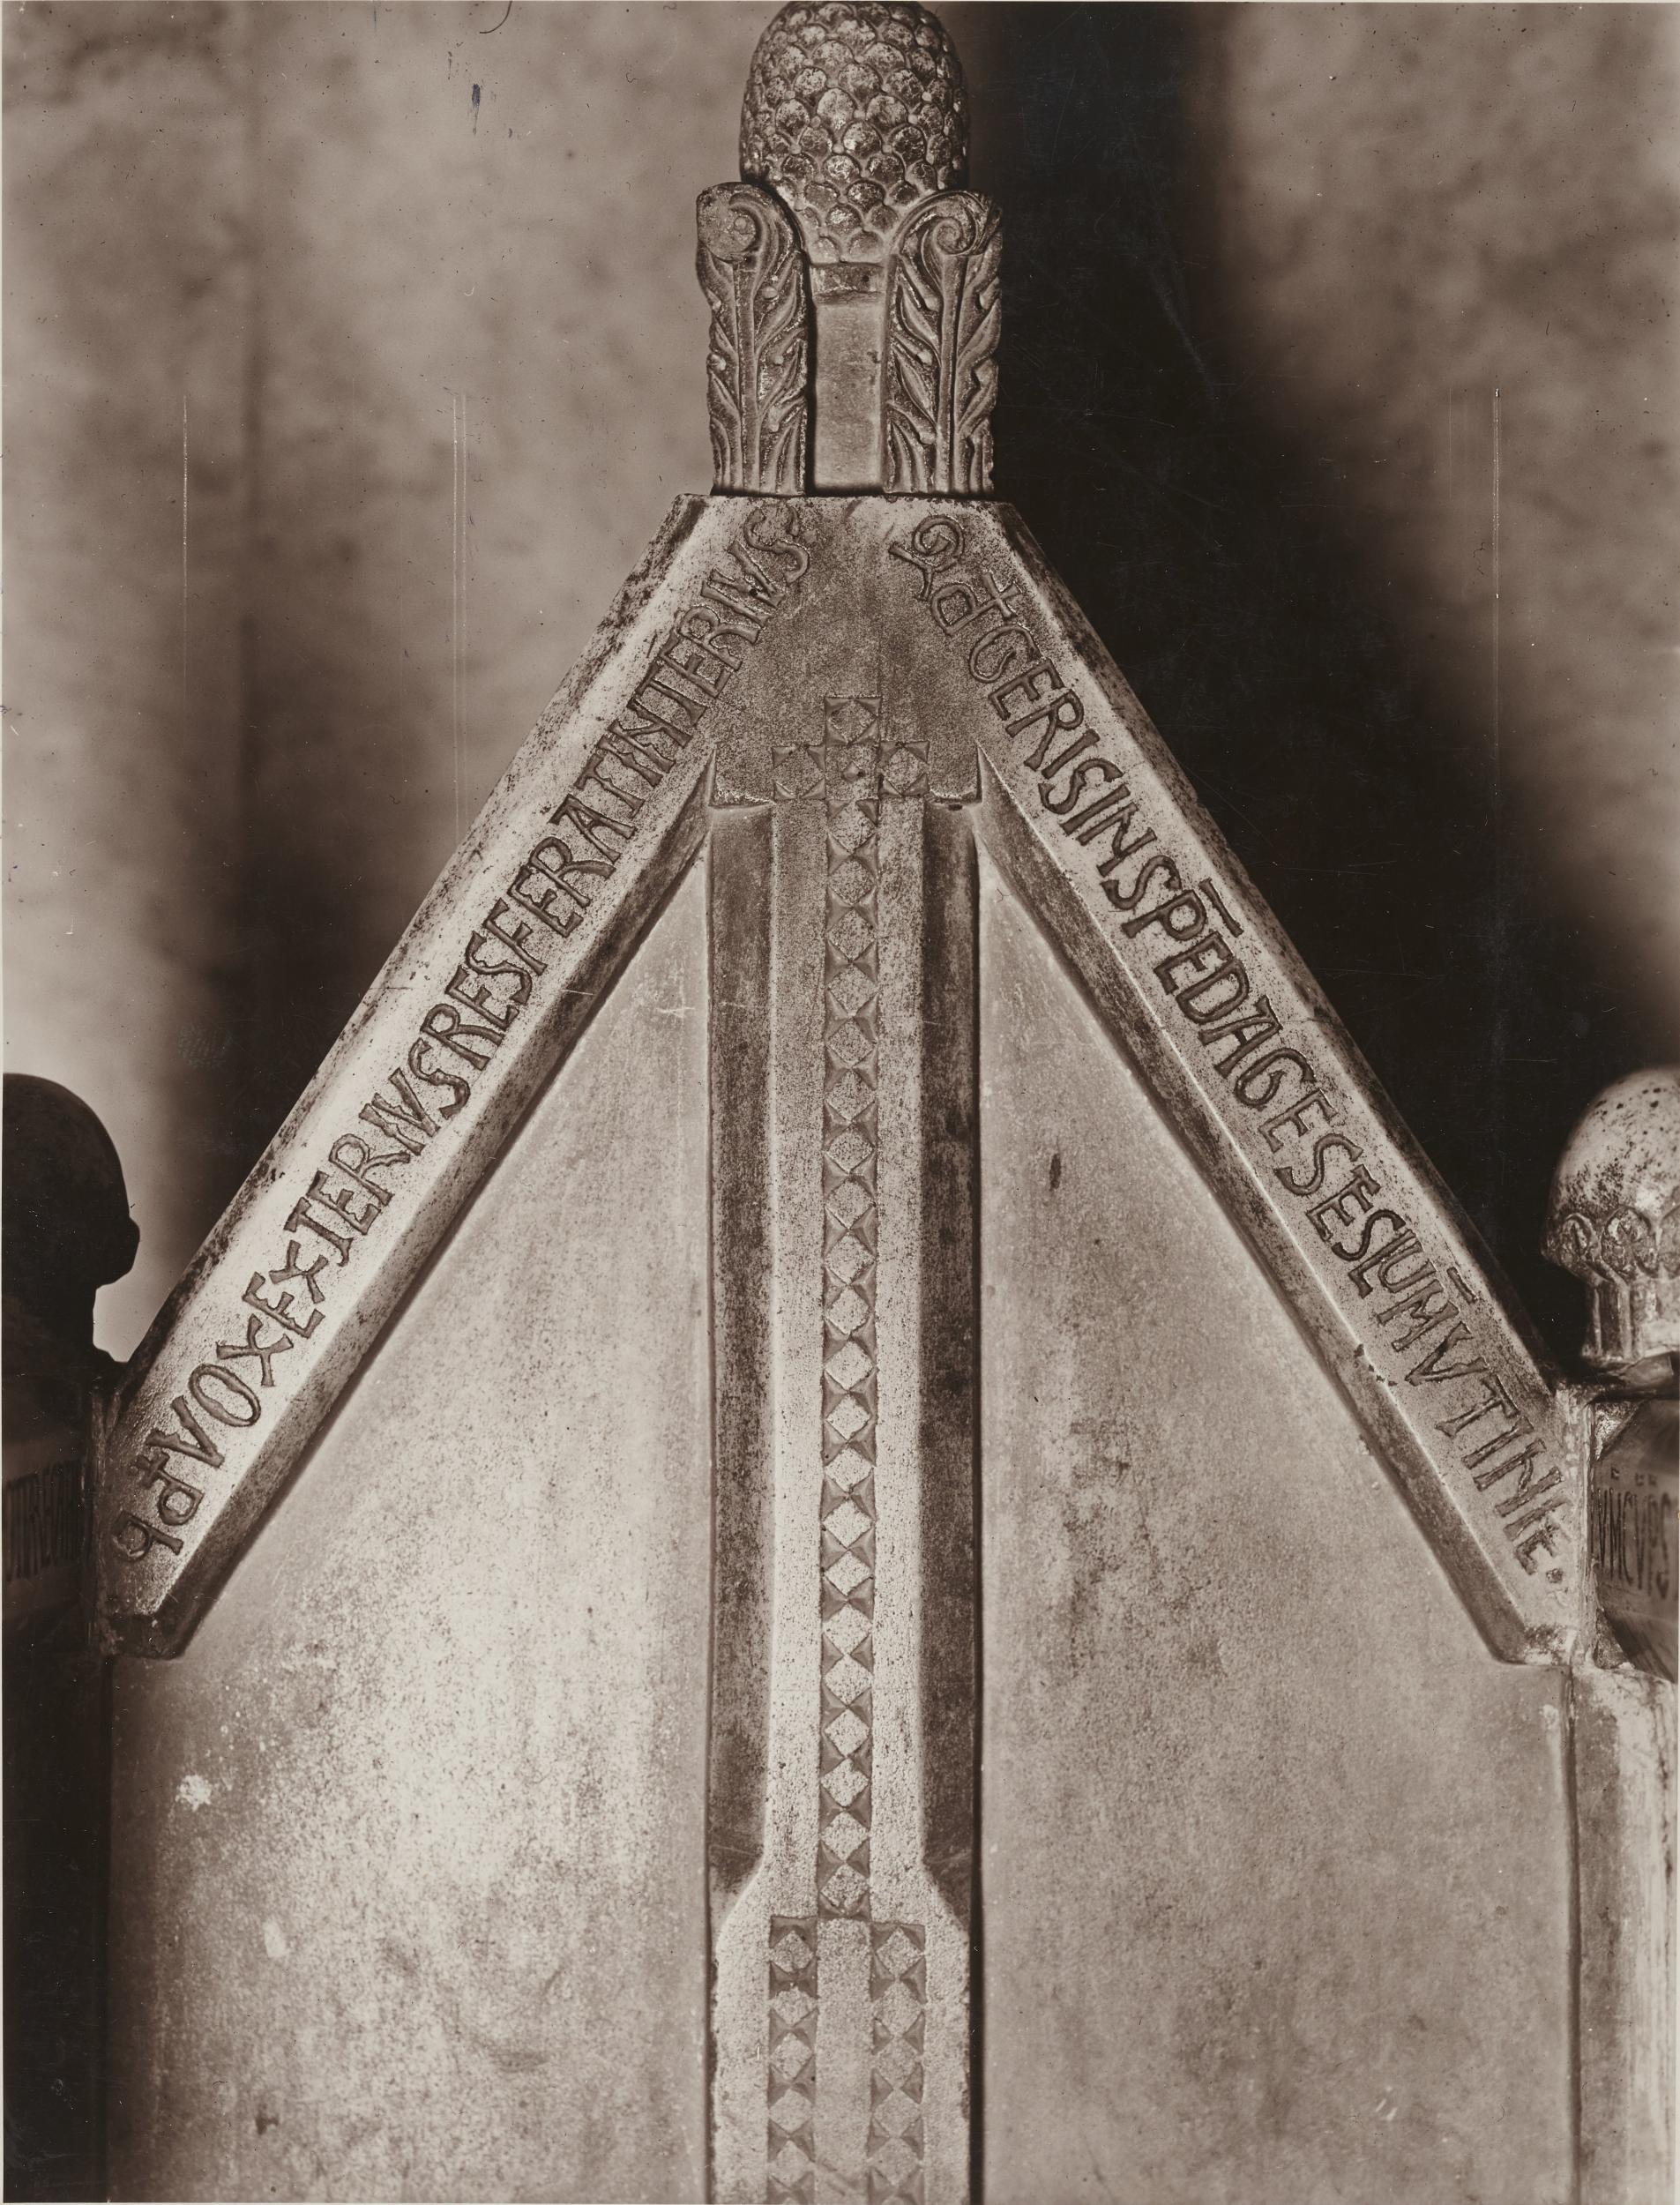 Antonio Ceccato, Canosa di Puglia - Cattedrale San Sabino, cattedrale vescovile, schienale, 1926-1950, gelatina ai sali d'argento/carta, 22,3x17 cm, MPI309694